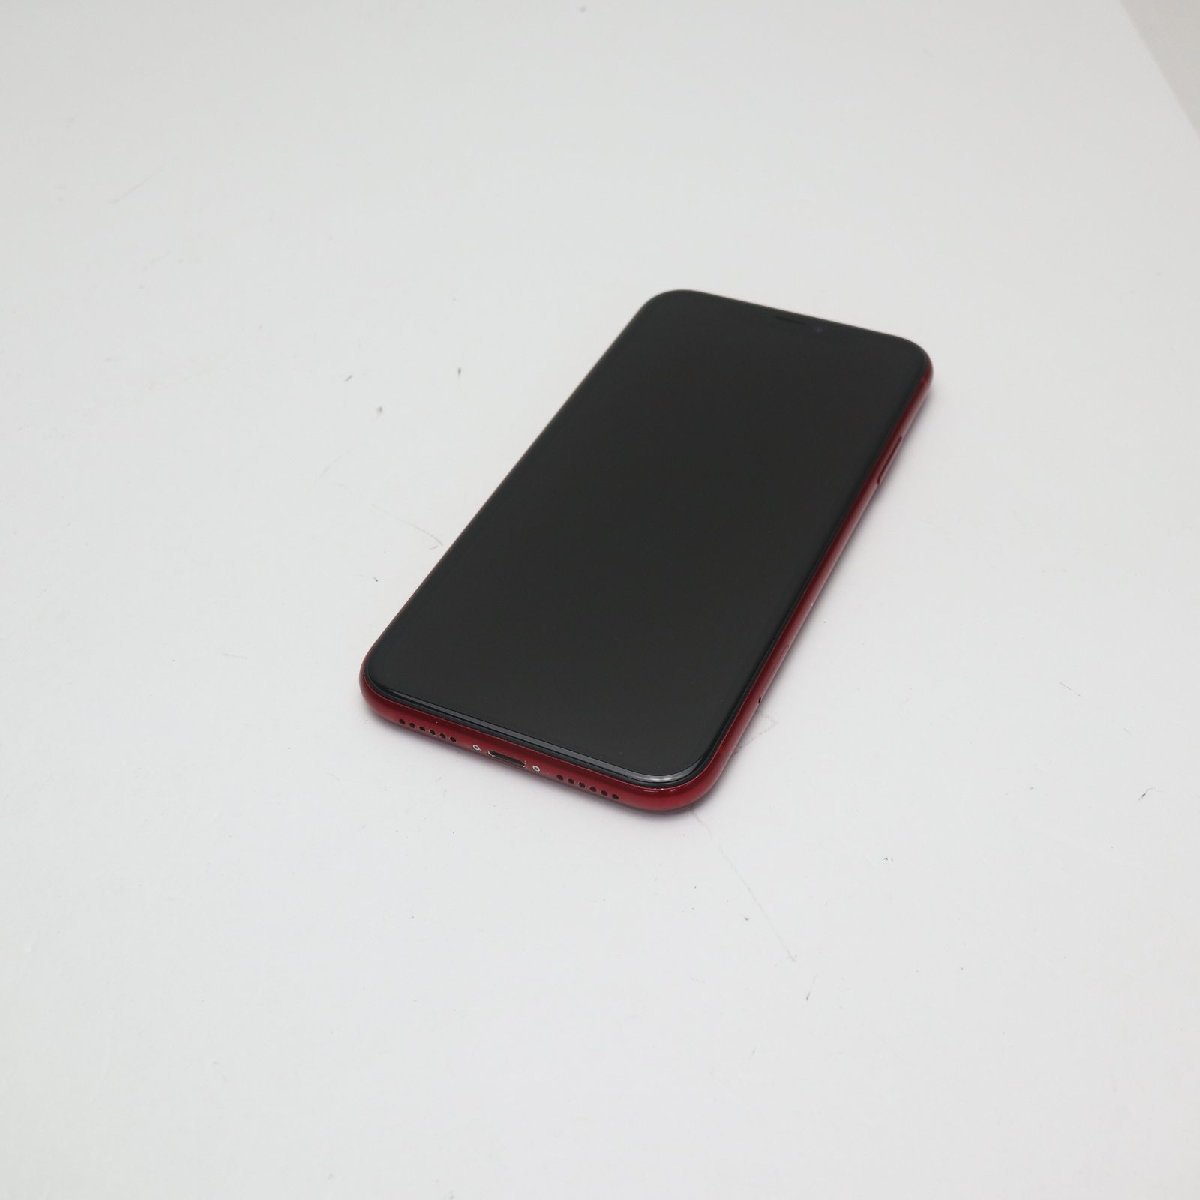 超美品 SIMフリー iPhoneXR 256GB レッド RED スマホ 白ロム 中古 即日発送 Apple iphone XR あすつく 土日祝発送OK